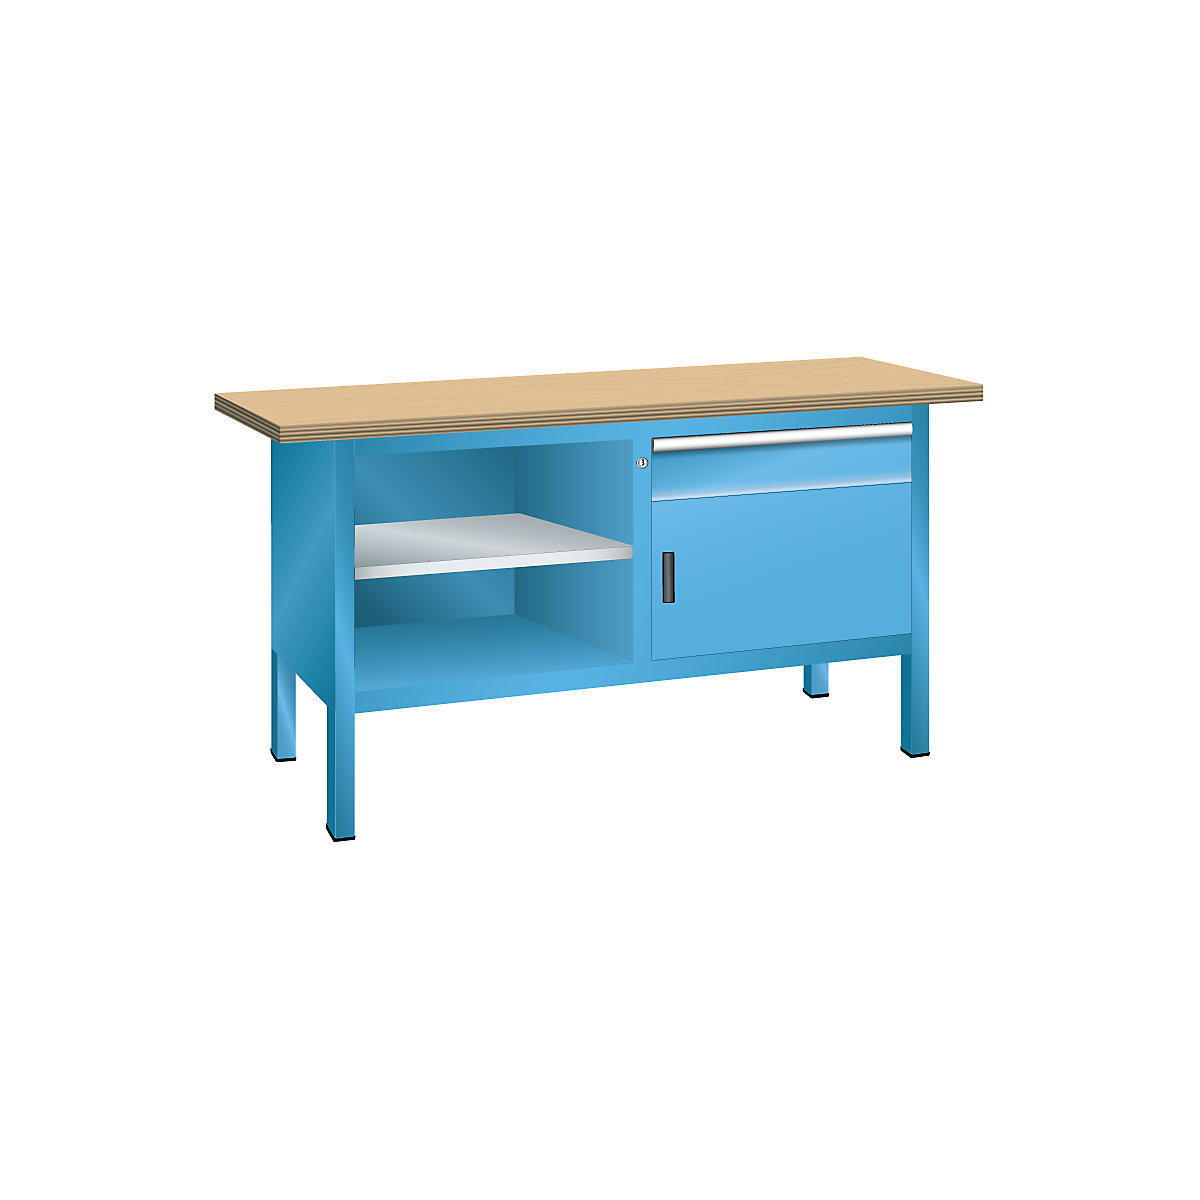 Dílenský stůl s deskou z překližky Multiplex, rámová konstrukce – LISTA, 1 zásuvka, 1 dveře, 3 police, korpus světlá modrá, čelo světlá modrá-9